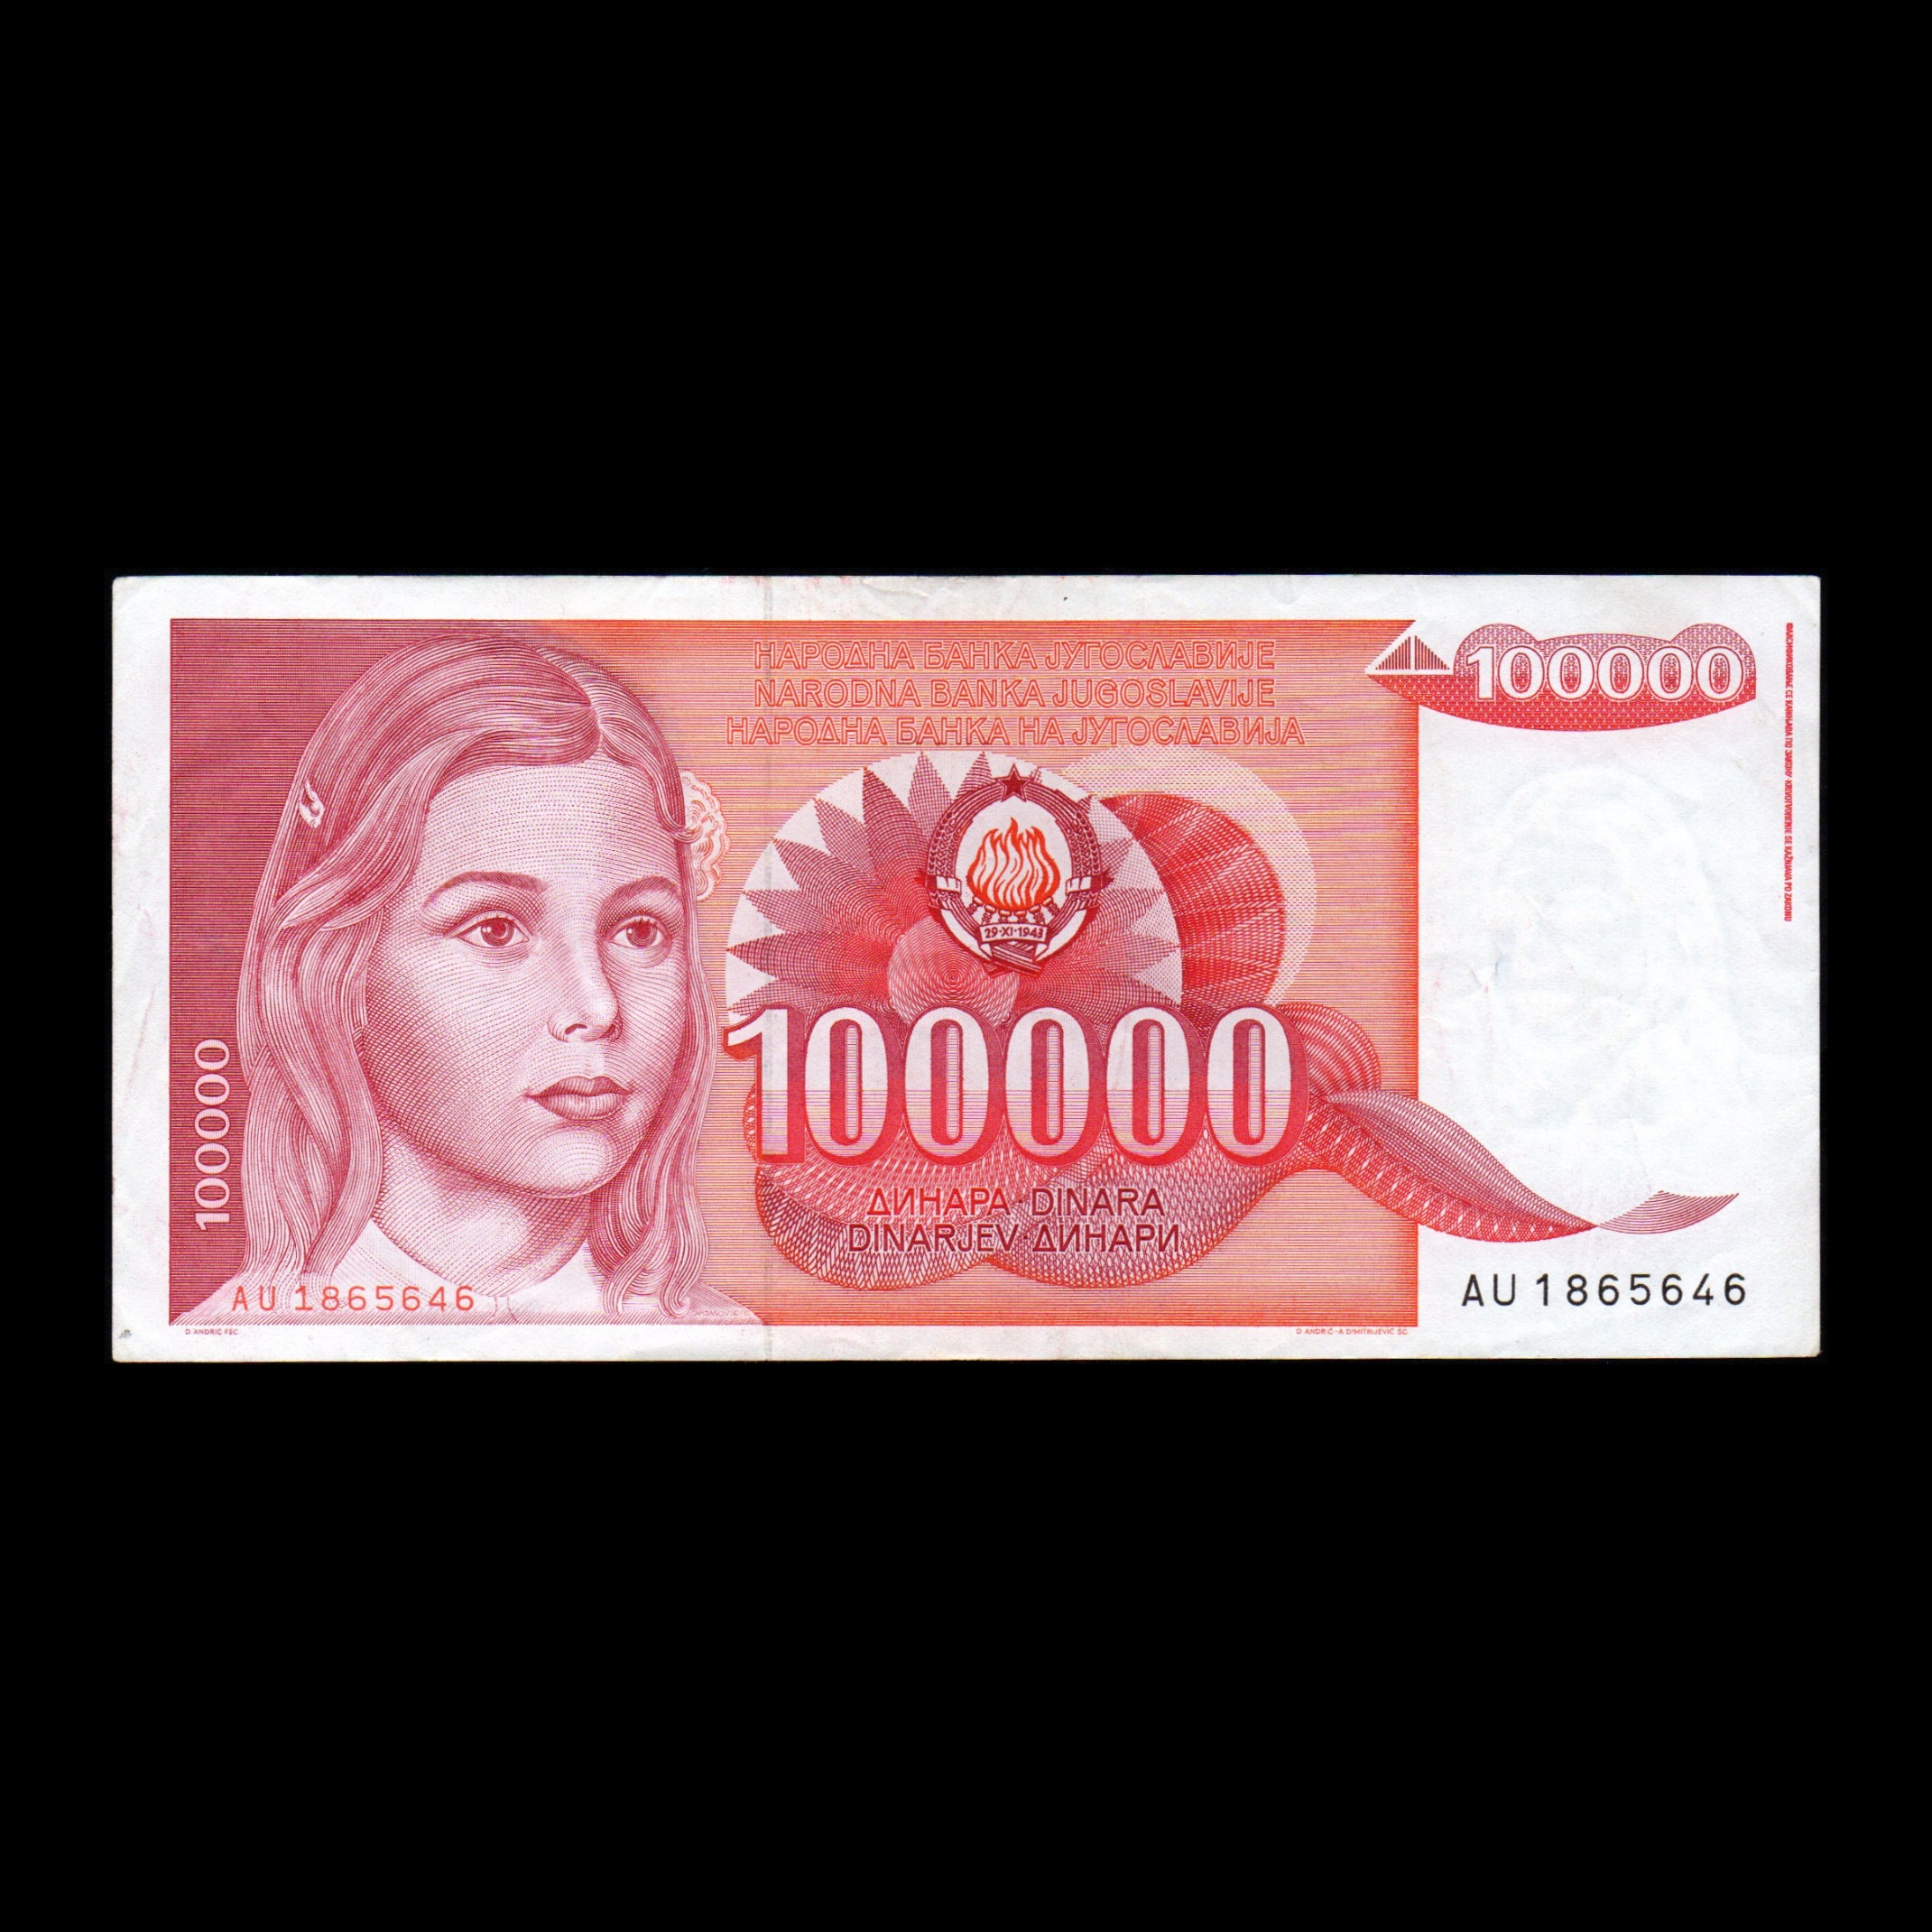 اسکناس تزئینی طرح کشور یوگسلاوی مدل 100.000 دینار